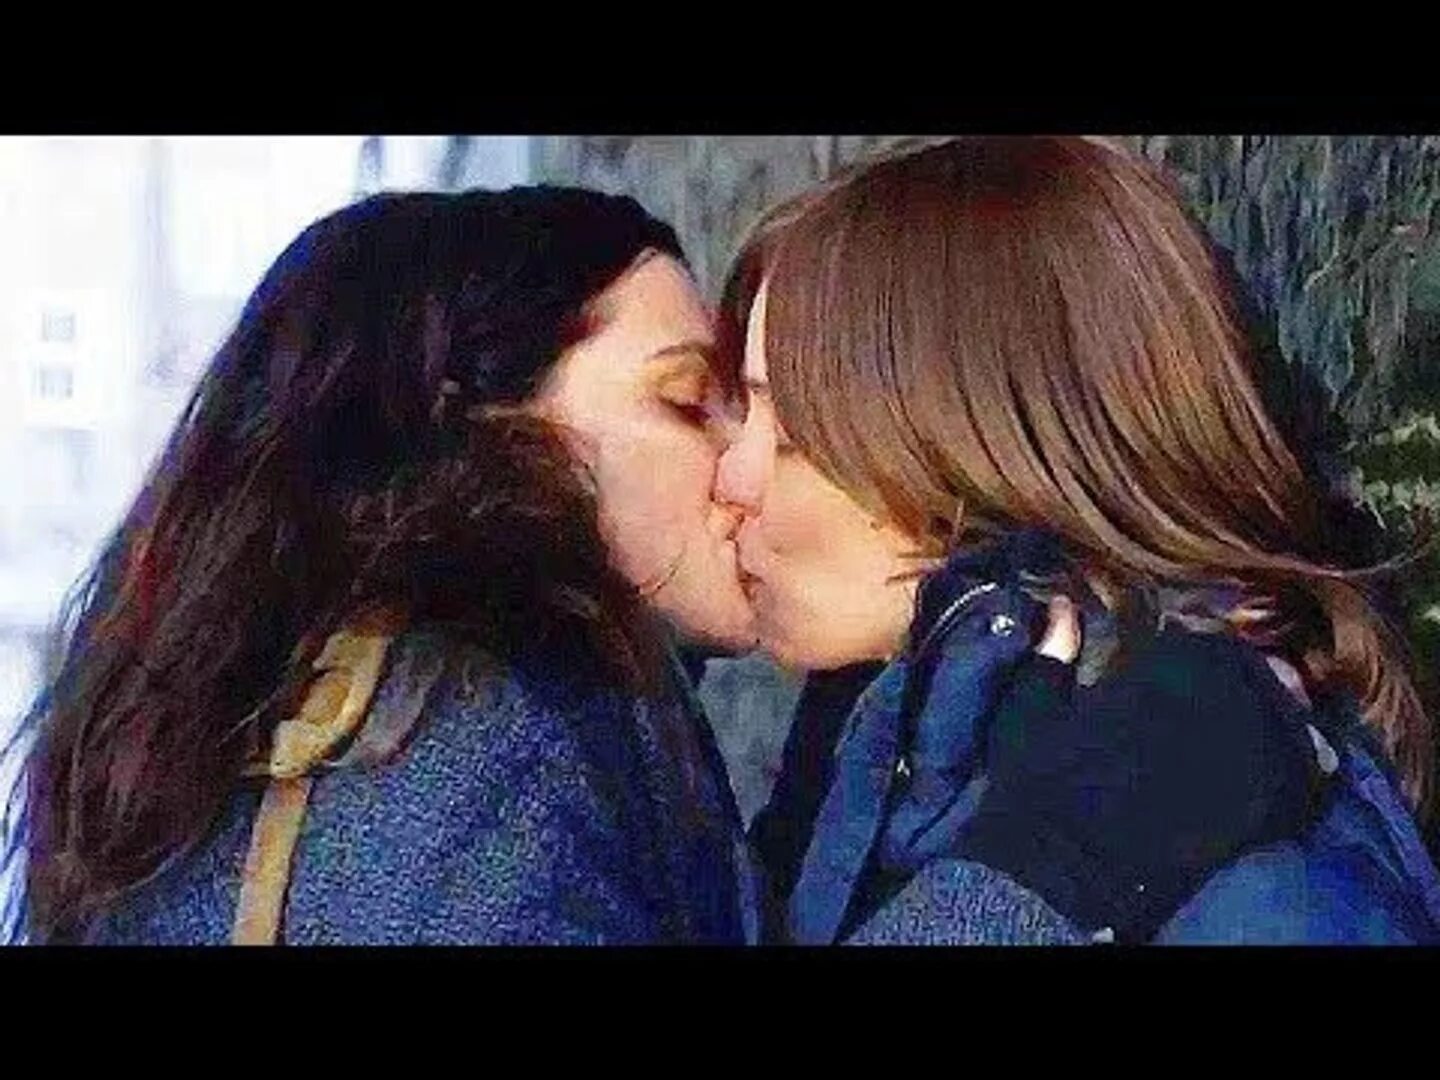 Рейчел Вайс и Рэйчел Макадамс поцелуй. Рэйчел Макадамс поцелуй. Рэйчел Макадамс Рэйчел Вайс поцелуй. Рэйчел Вайс lesbian. Jones lesbian